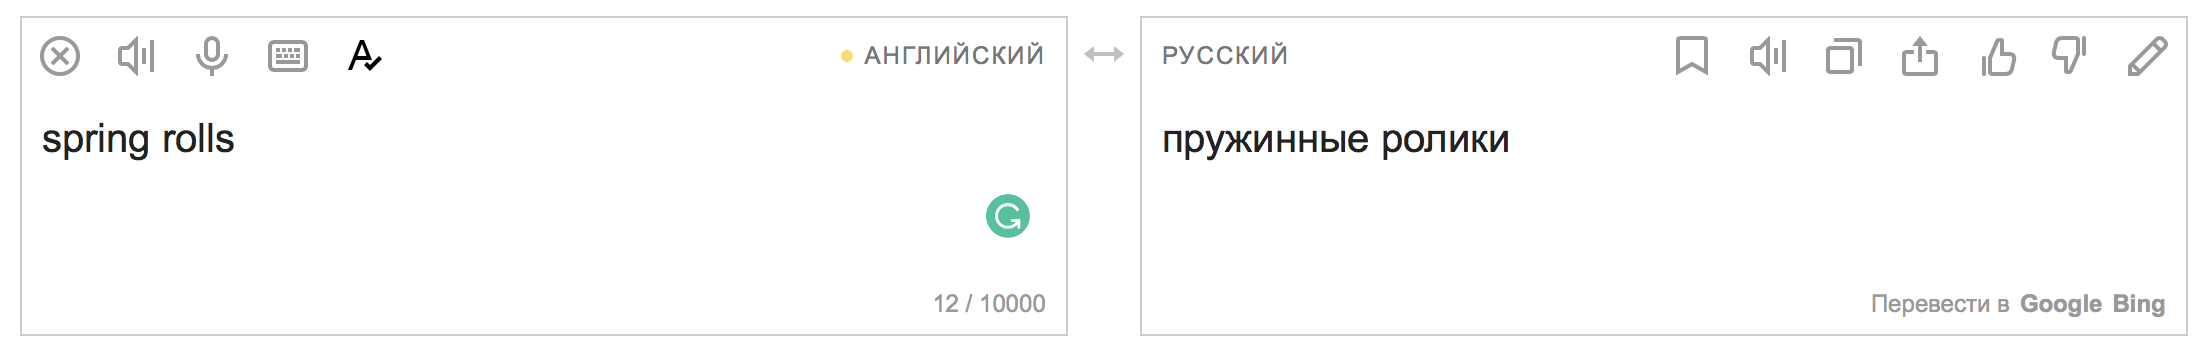 Не Лев Толстой, а толстый лев: 7 очень смешных переводов от Google Translate